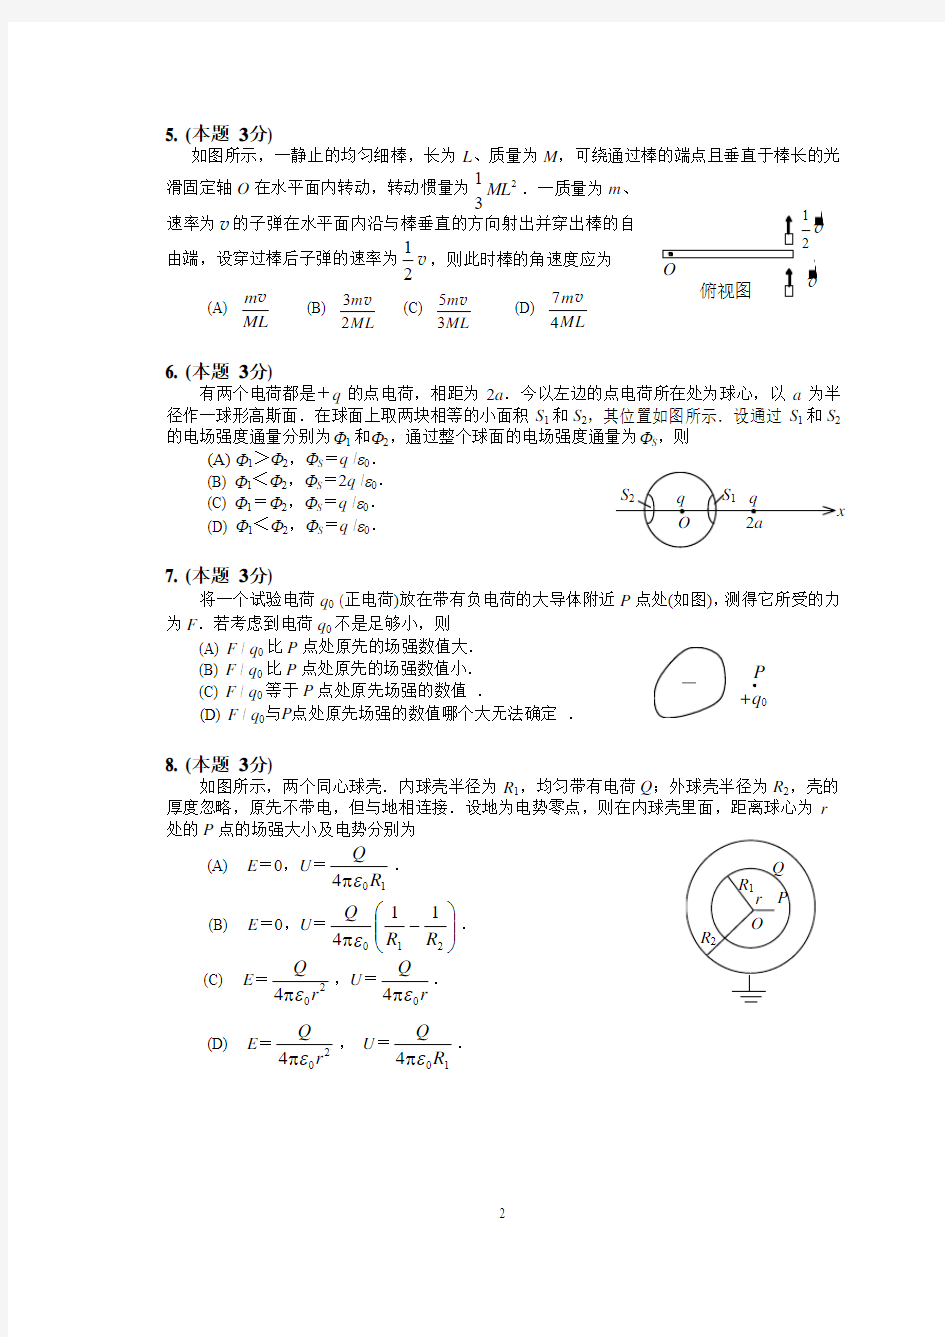 青岛科技大学11级大学物理C(上)2卷